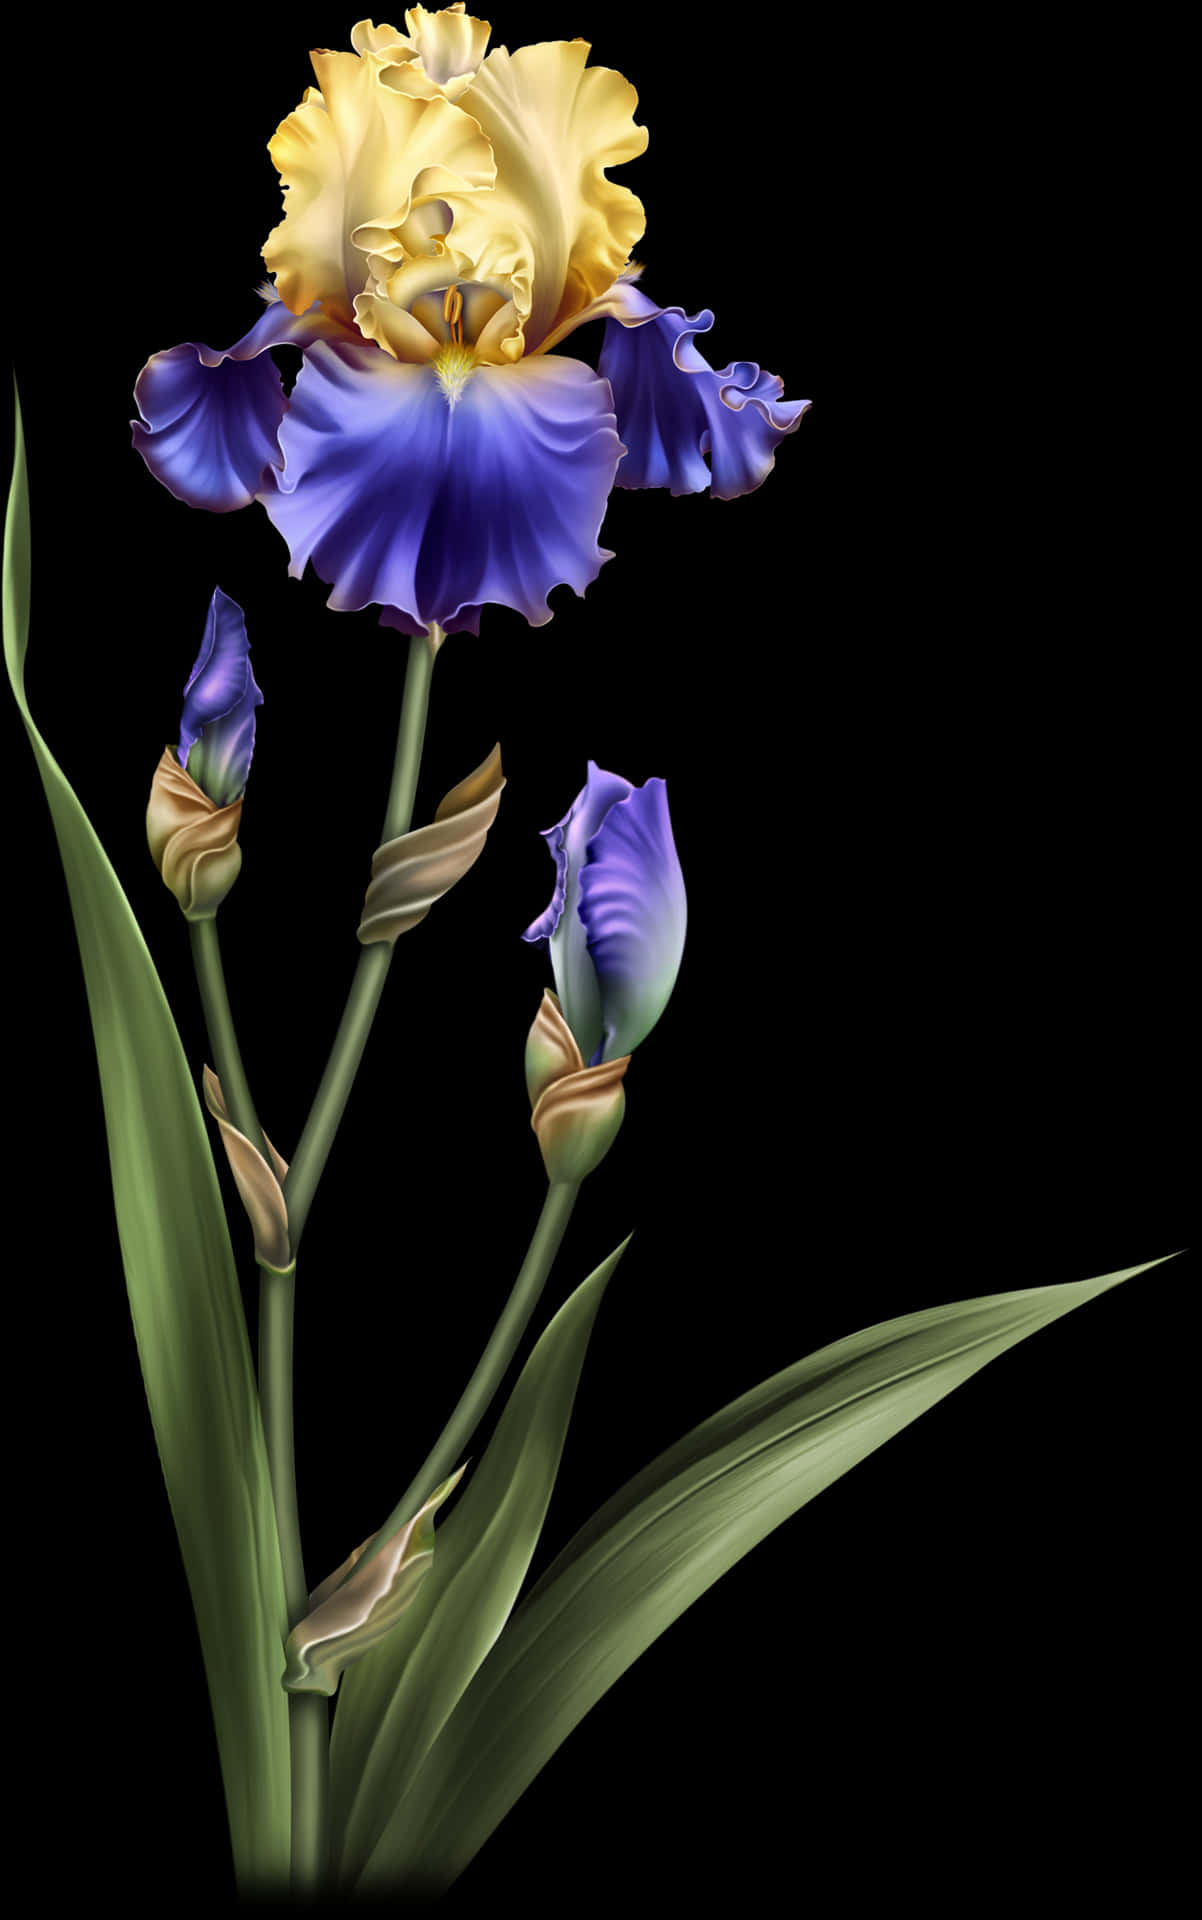 Vibrant_ Iris_ Flower_ Artwork.jpg PNG image